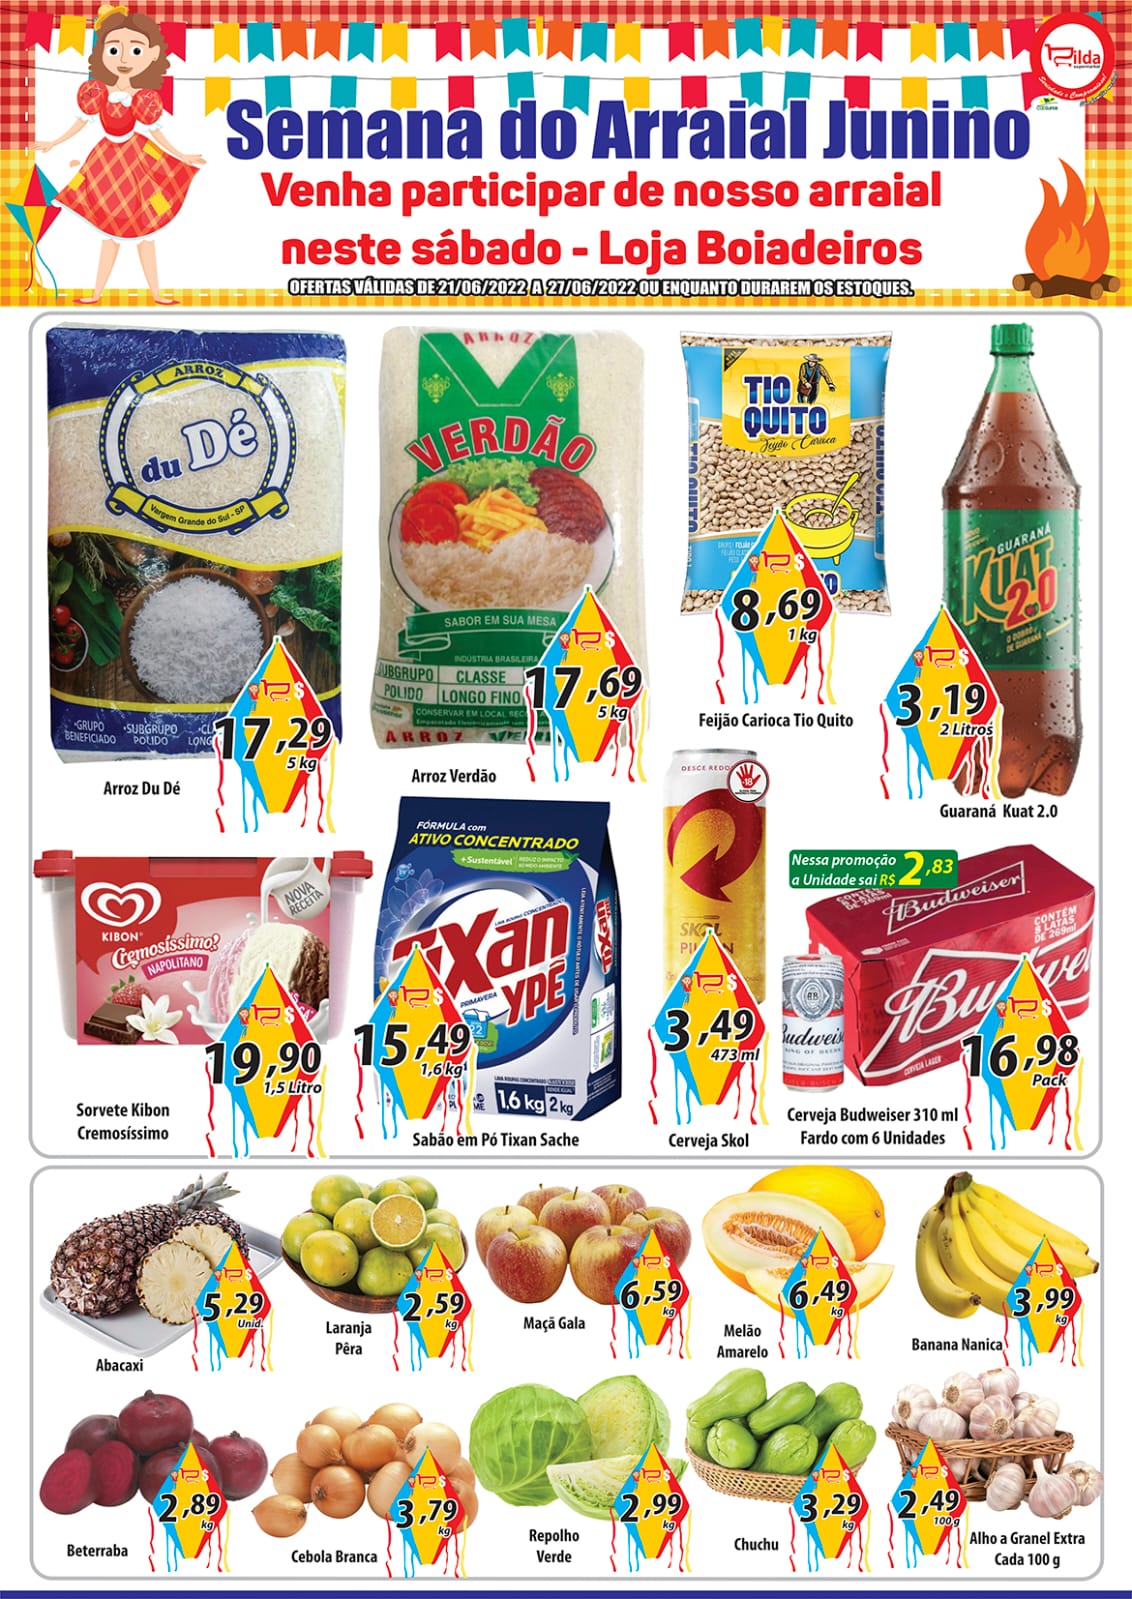  Rilda Supermarket - Ofertas da Semana Supermercados Passos MG / Jornal de Ofertas Supermercados